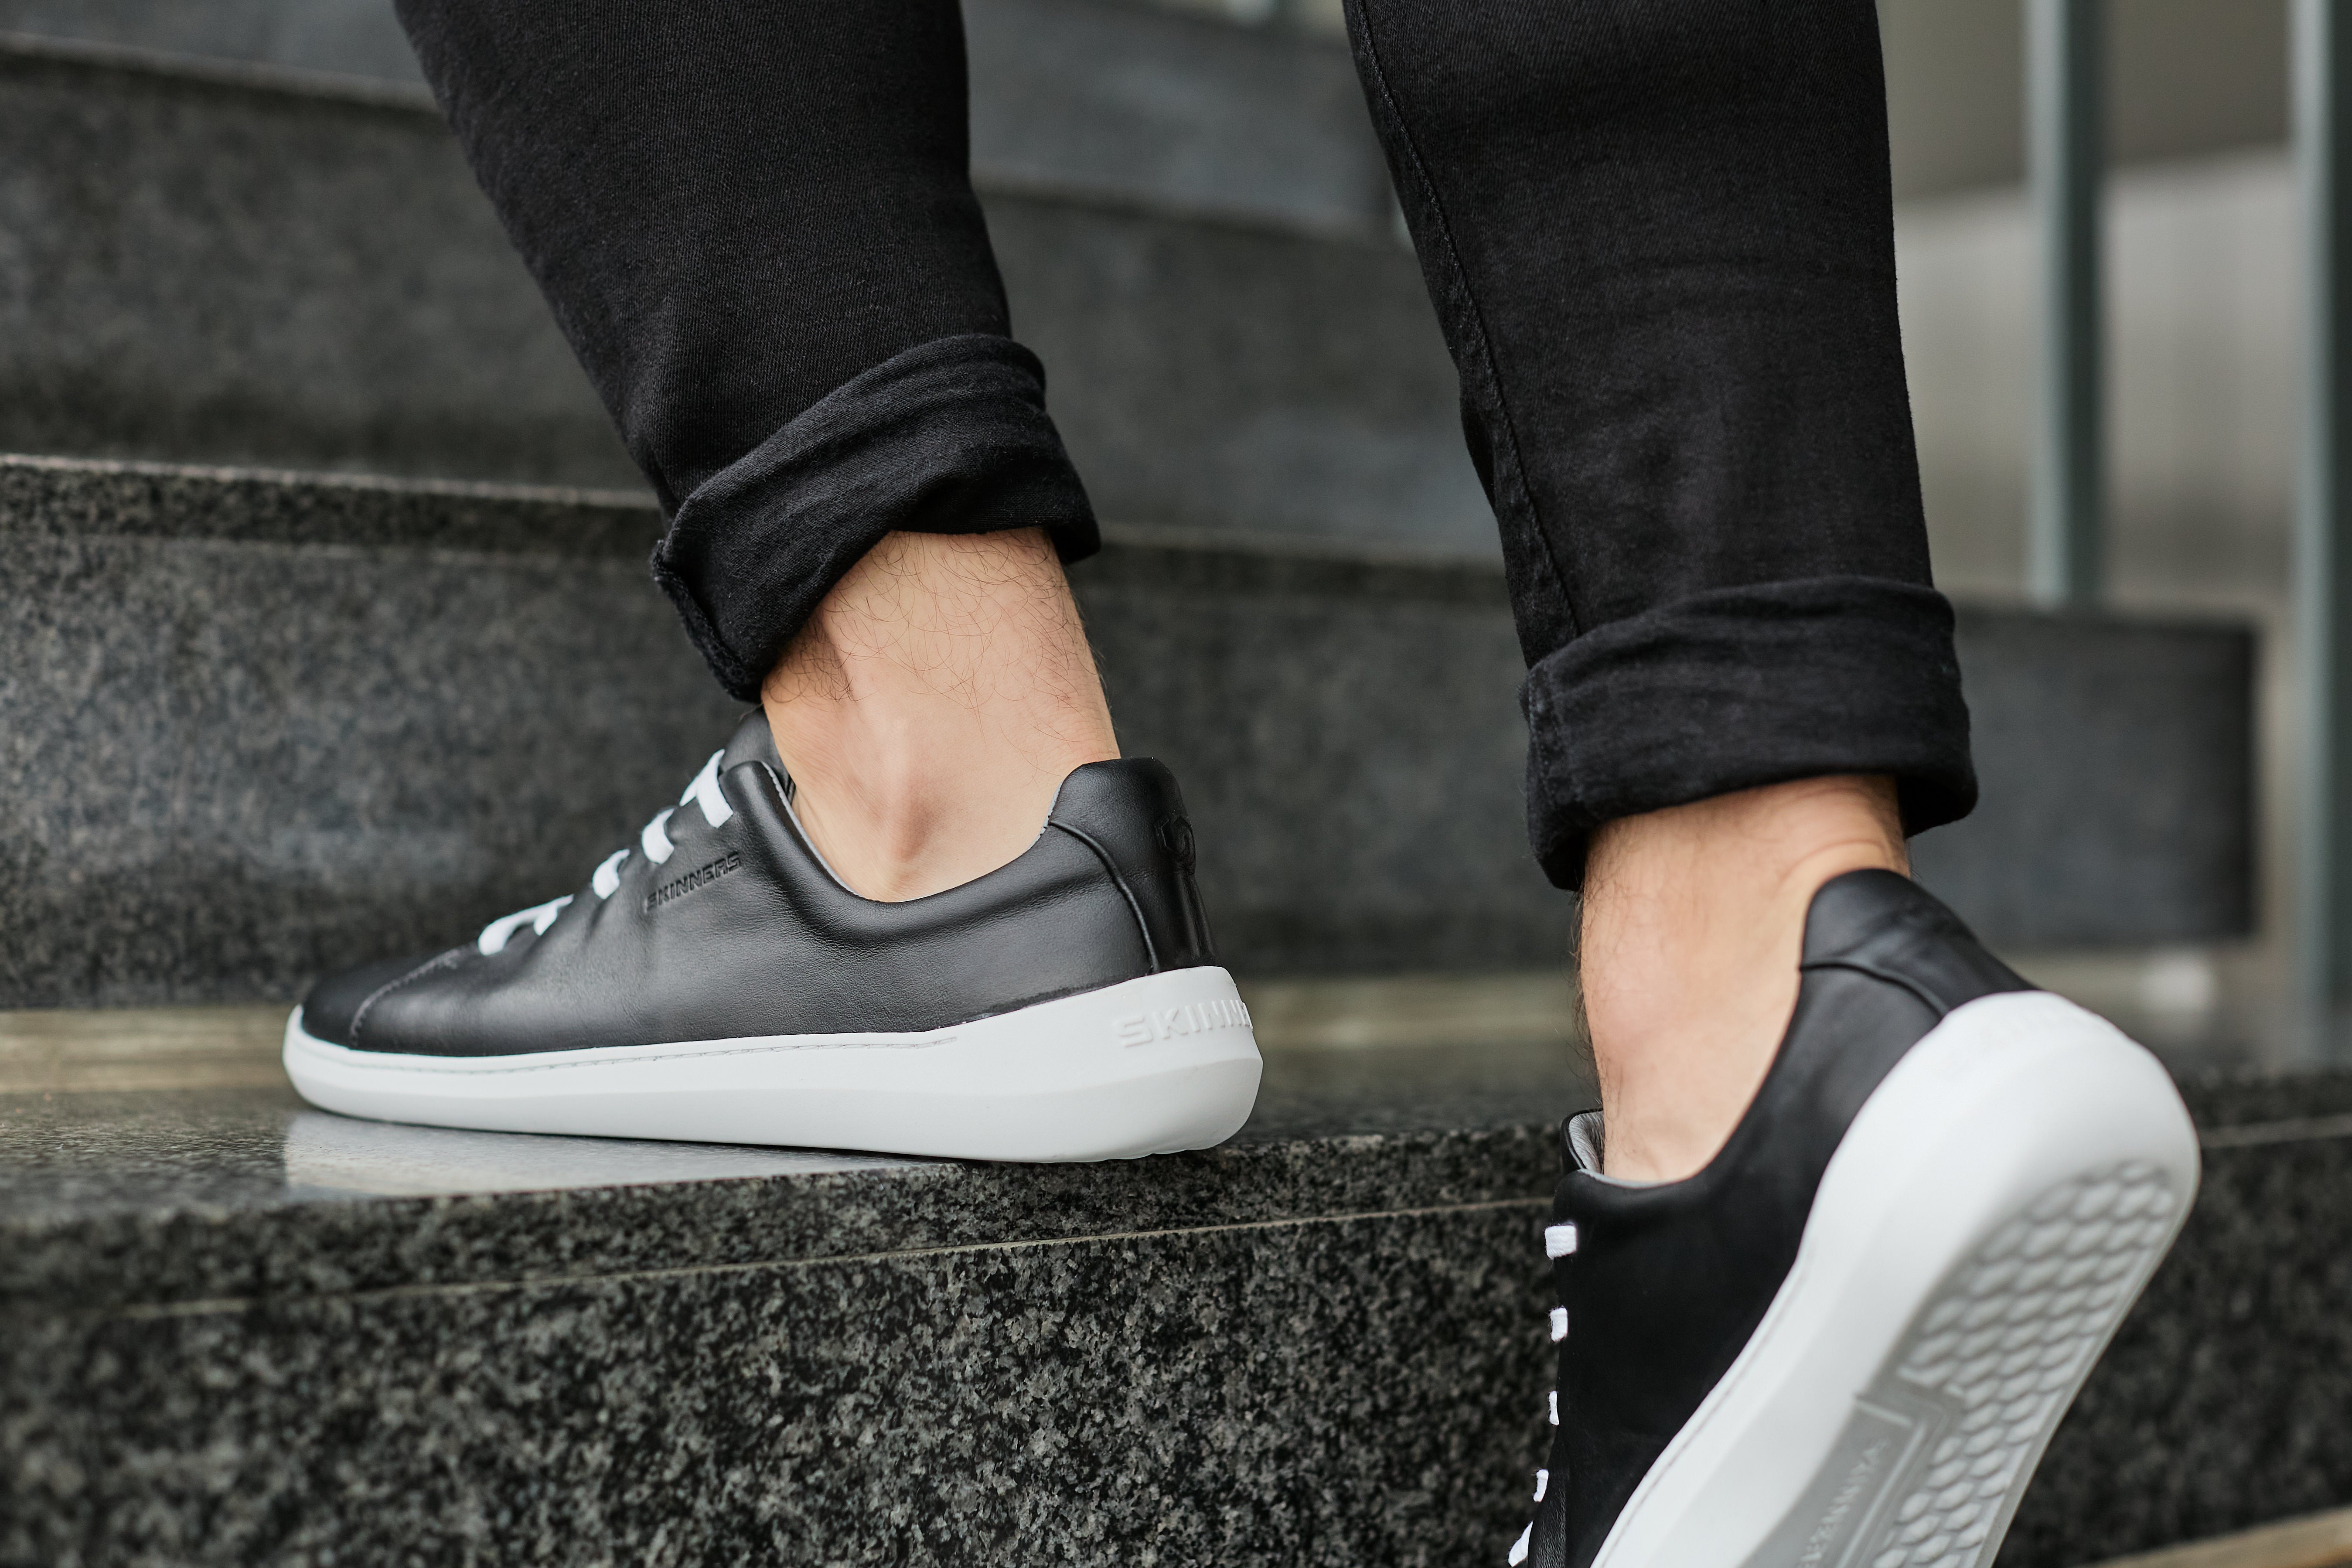 Mærkbare Walker barfods sneakers til kvinder og mænd i farven black / white, lifestyle